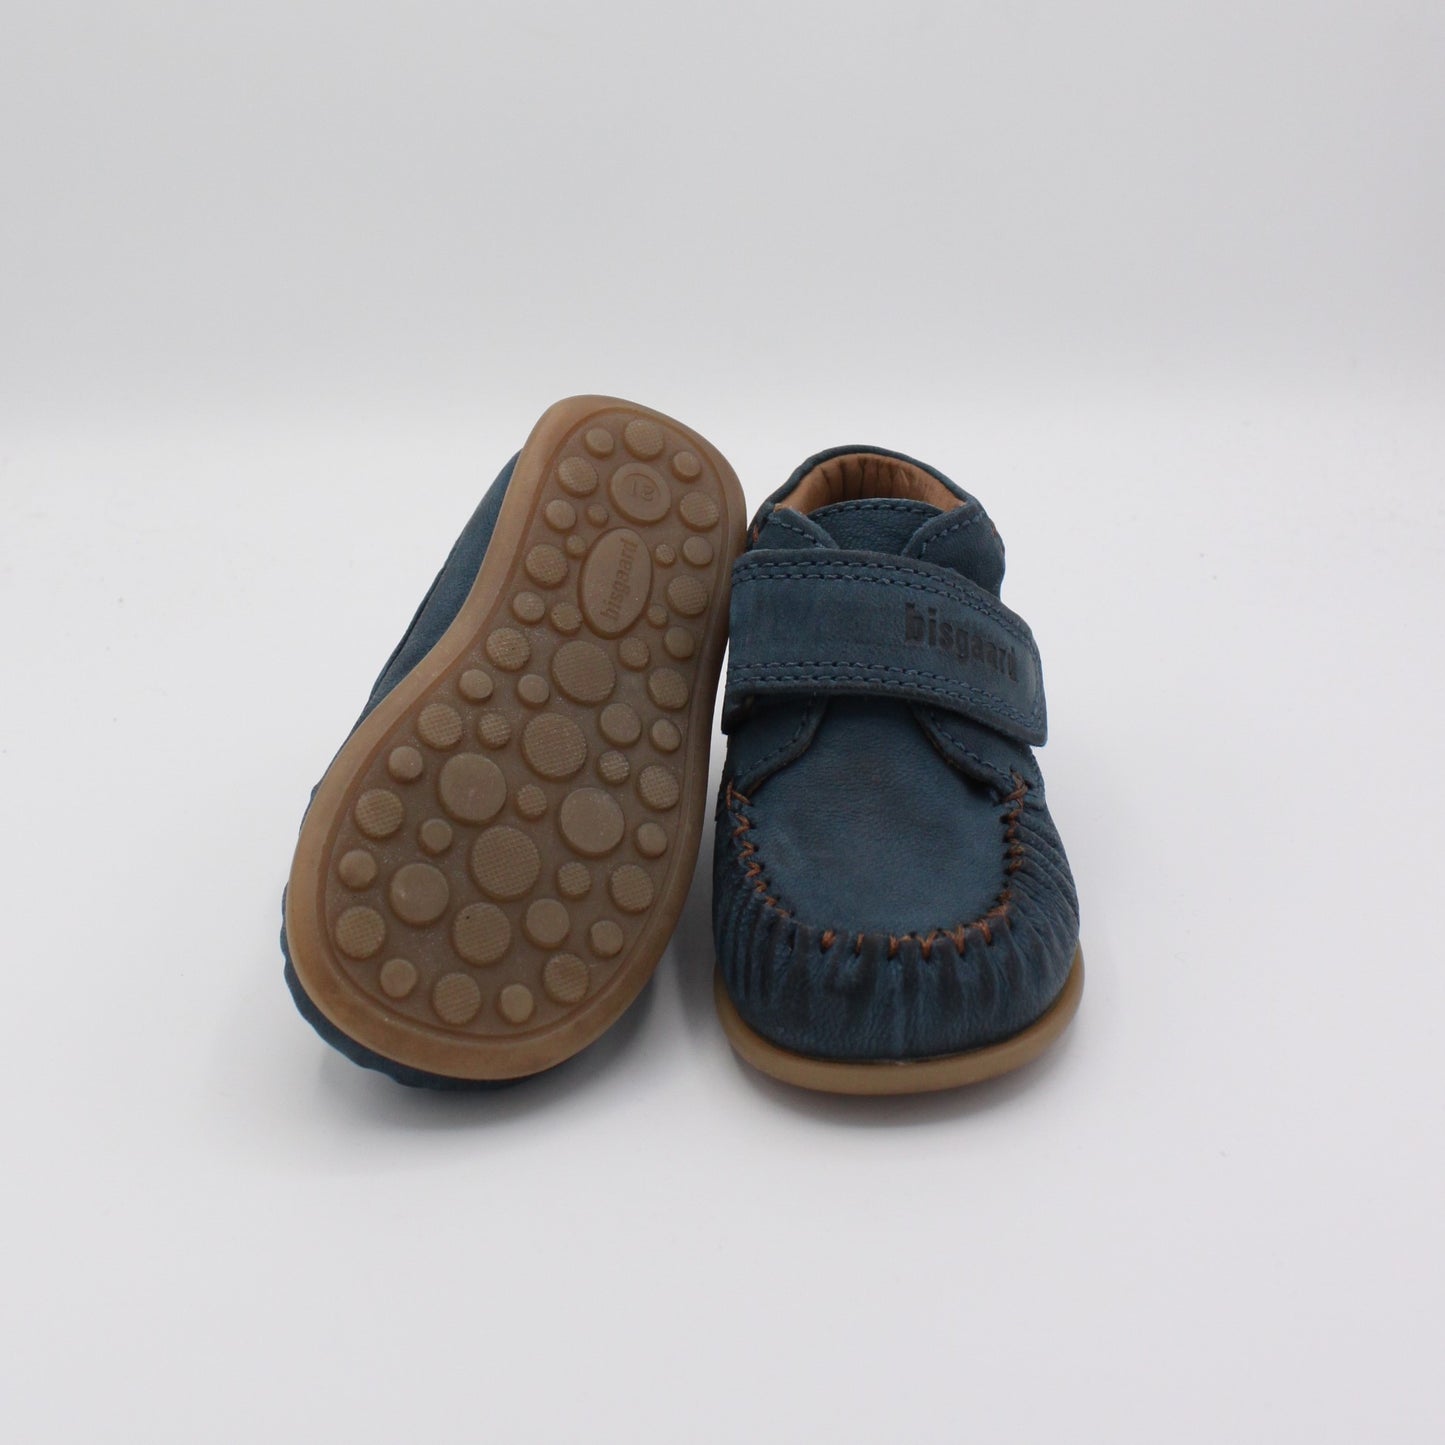 Pre-loved Schuhe (EU 21)